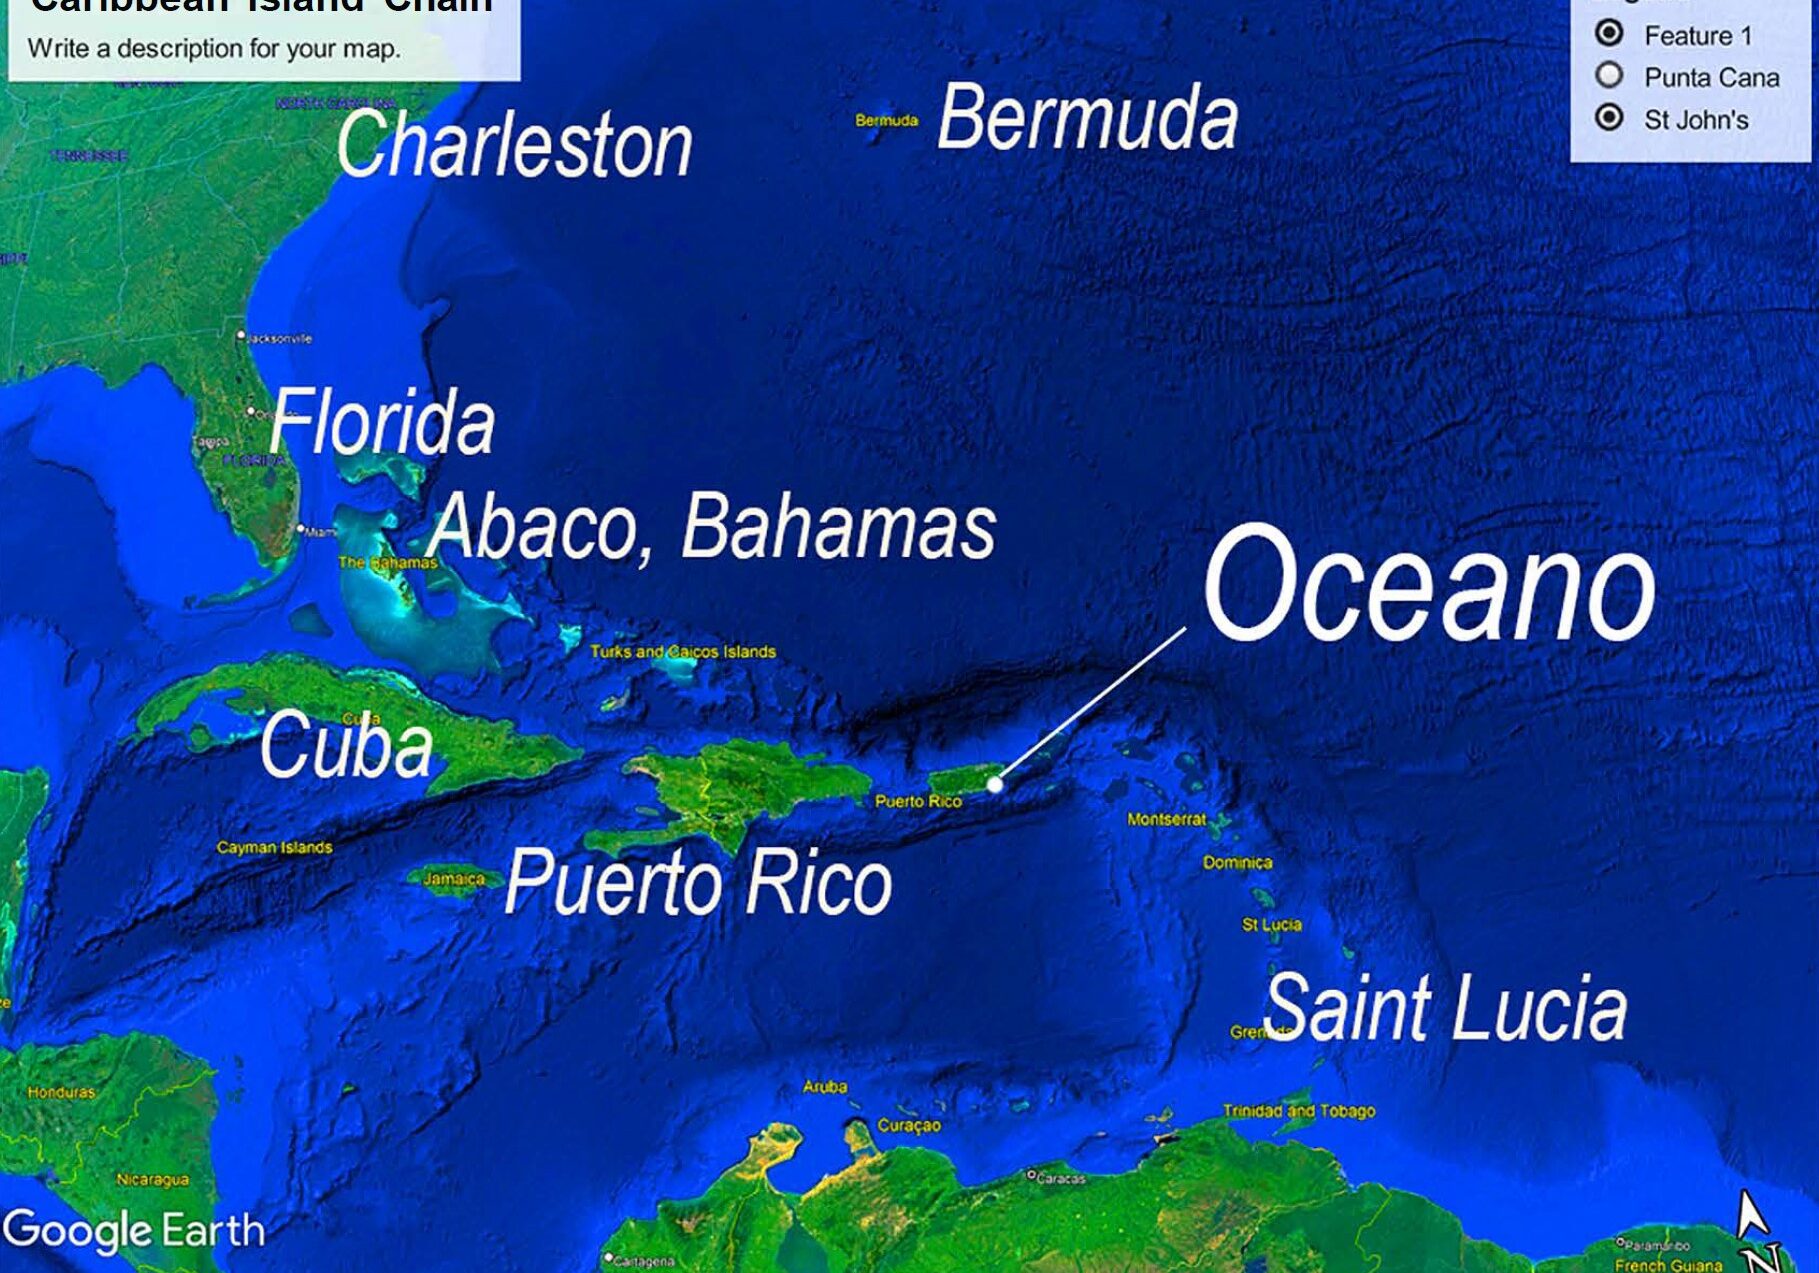 Oceano Locarion in Caribbean